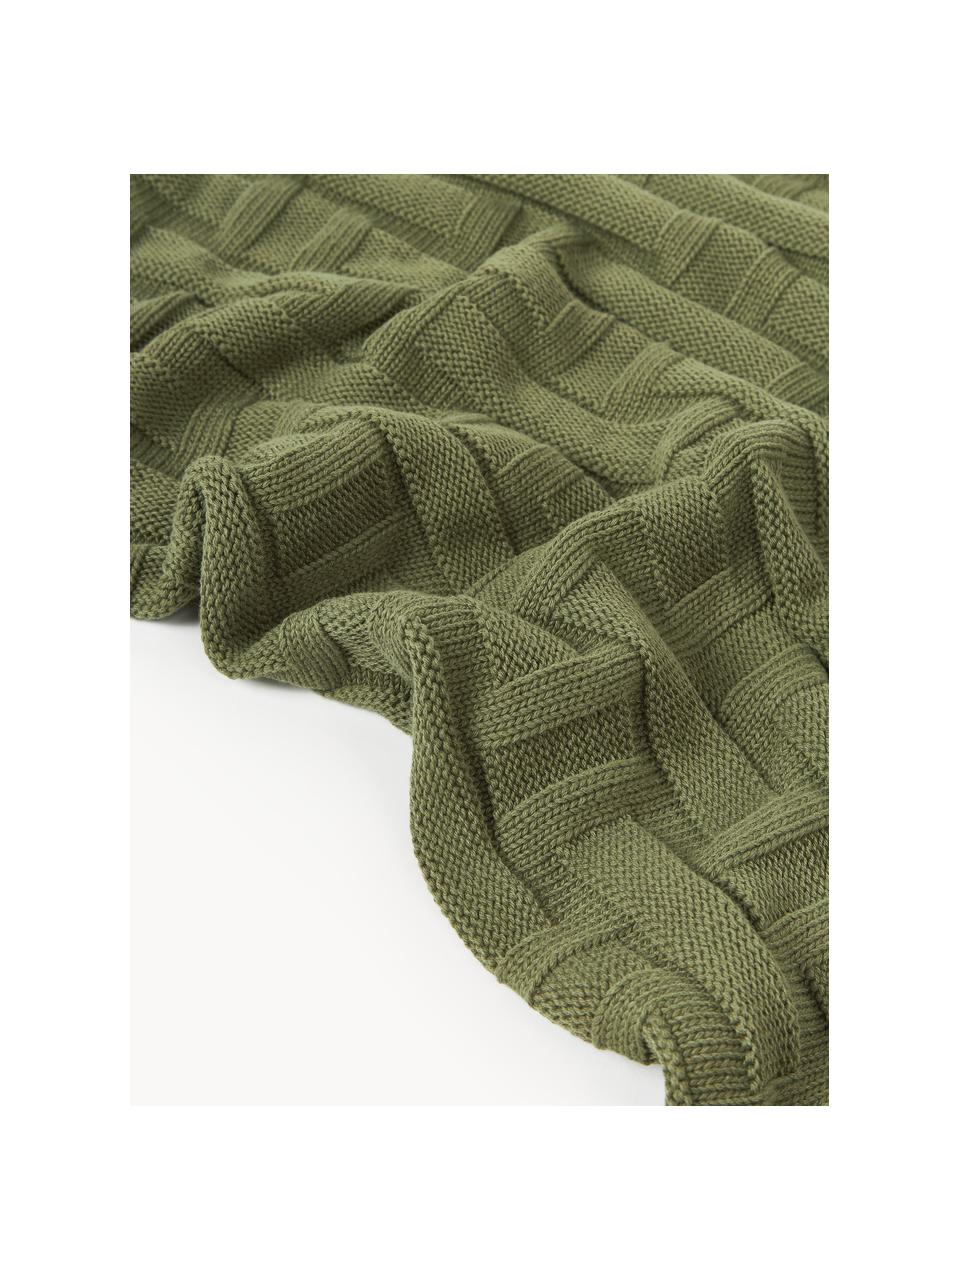 Koc z bawełny Gwen, 100% bawełna, Oliwkowy zielony, S 130 x D 170 cm